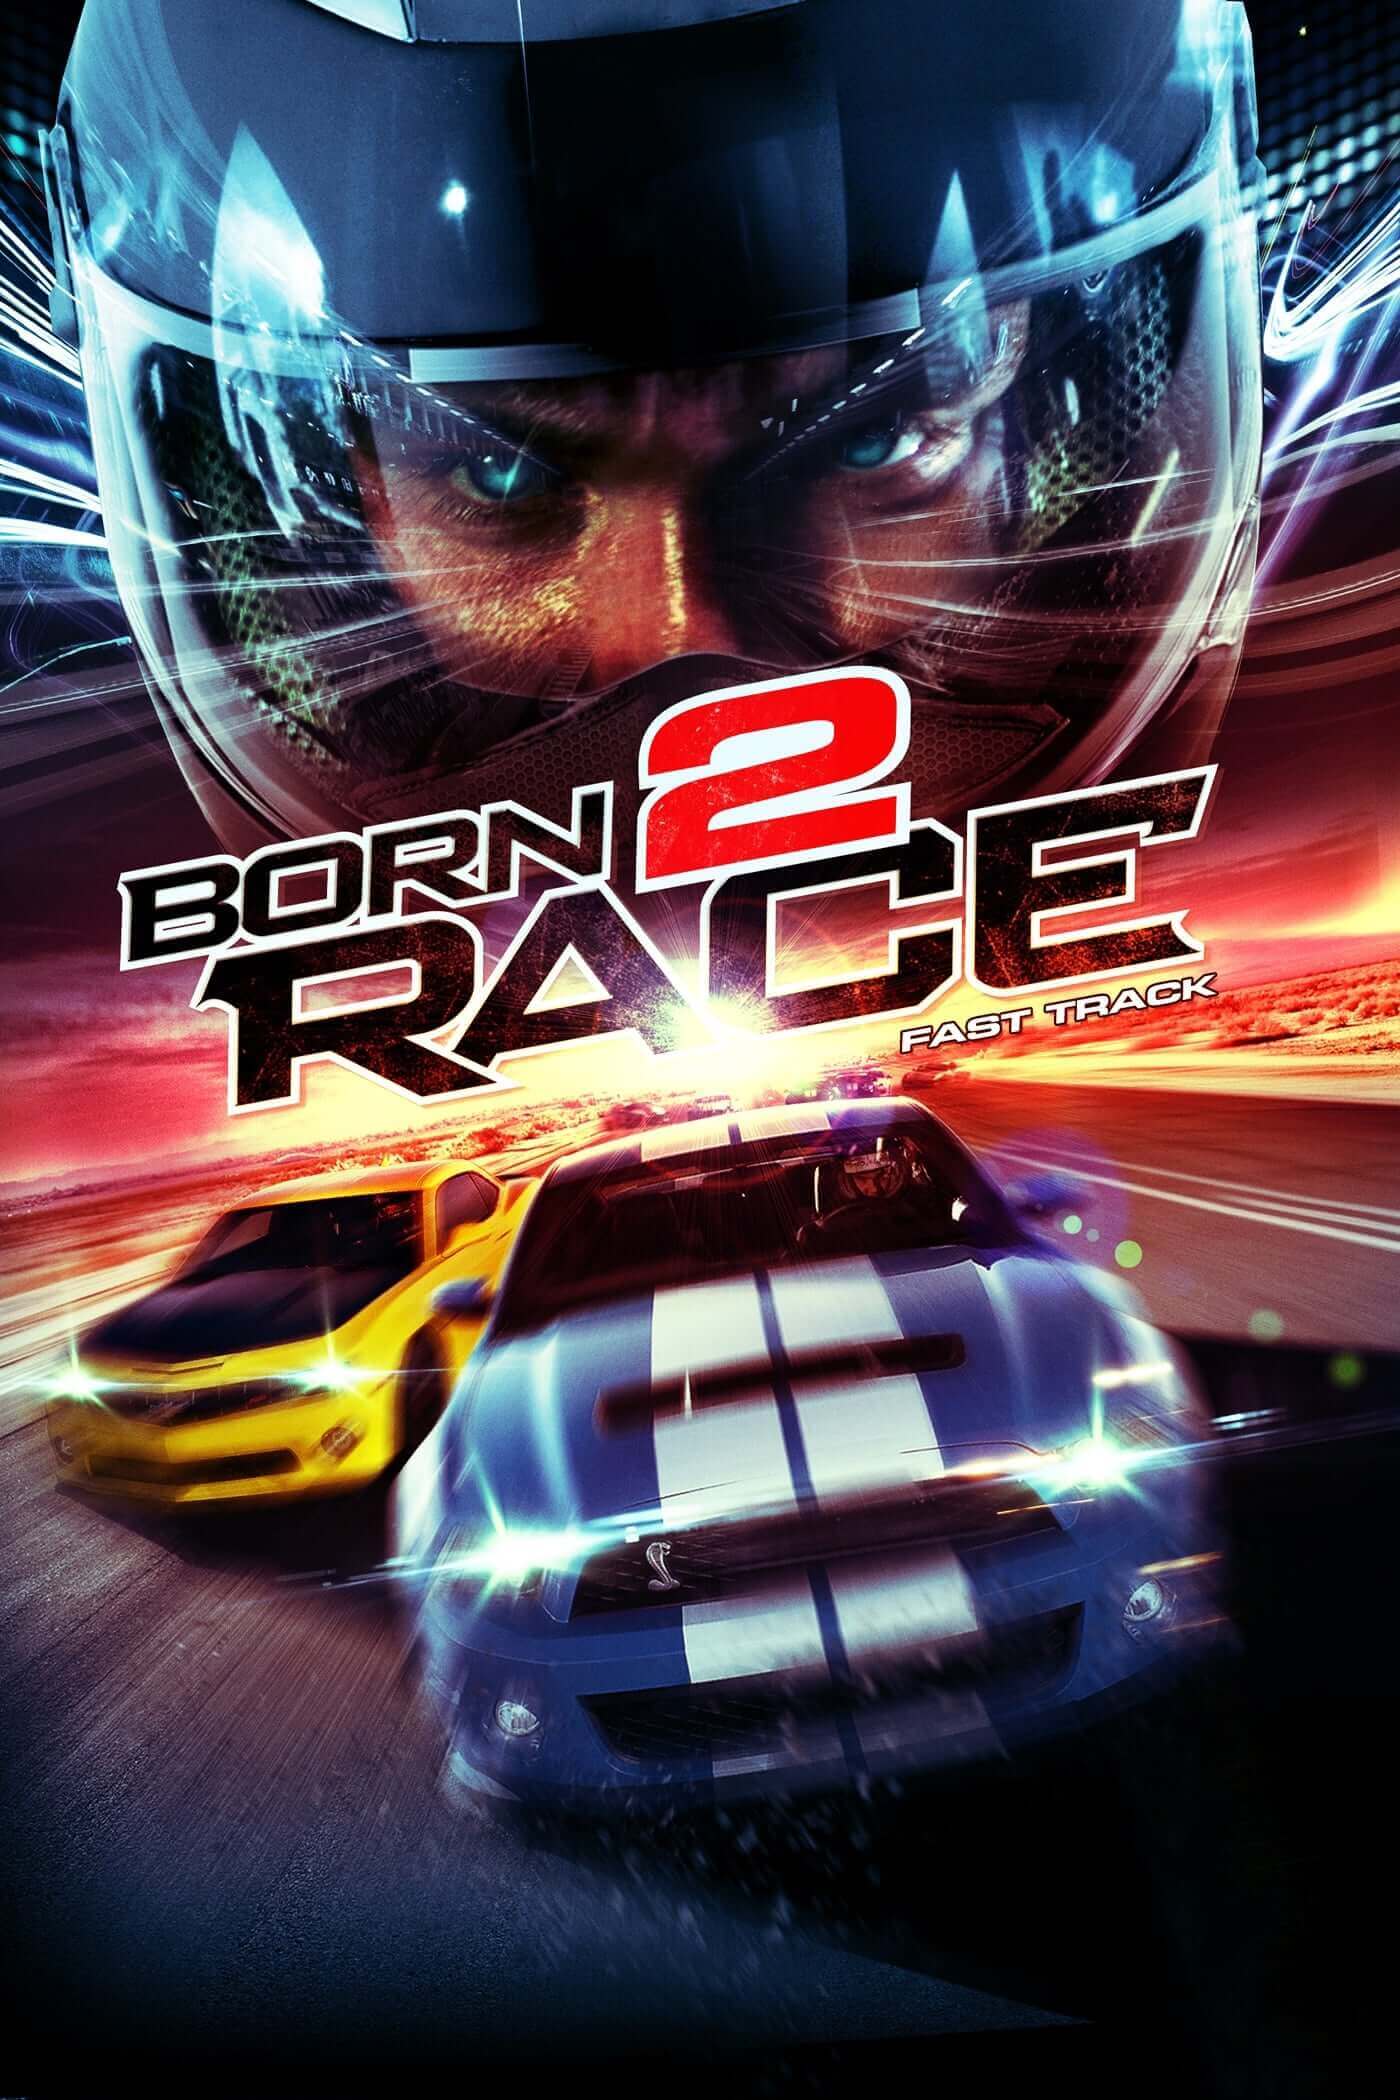 متولد شده برای مسابقه:مسیر سریع (Born to Race: Fast Track)